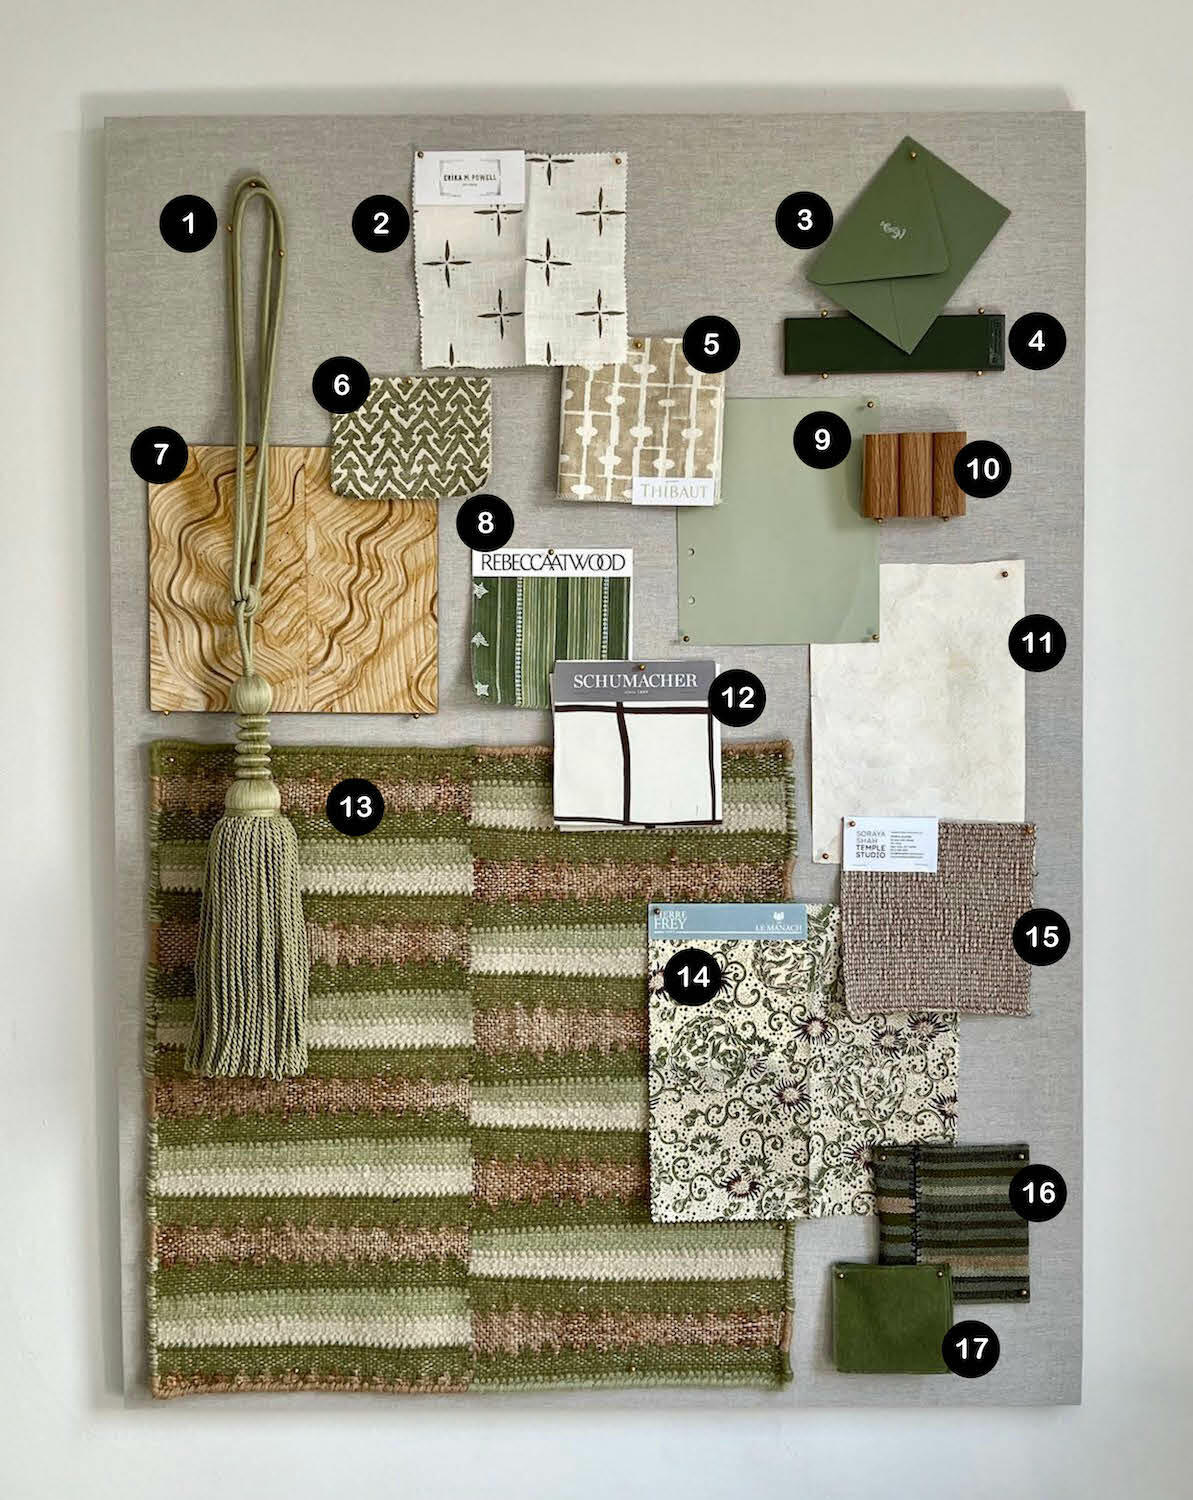 Sarah Lederman’s spring-inspired selection of butterfly-print fabrics, hunter green tiles and bark-skin wallcoverings